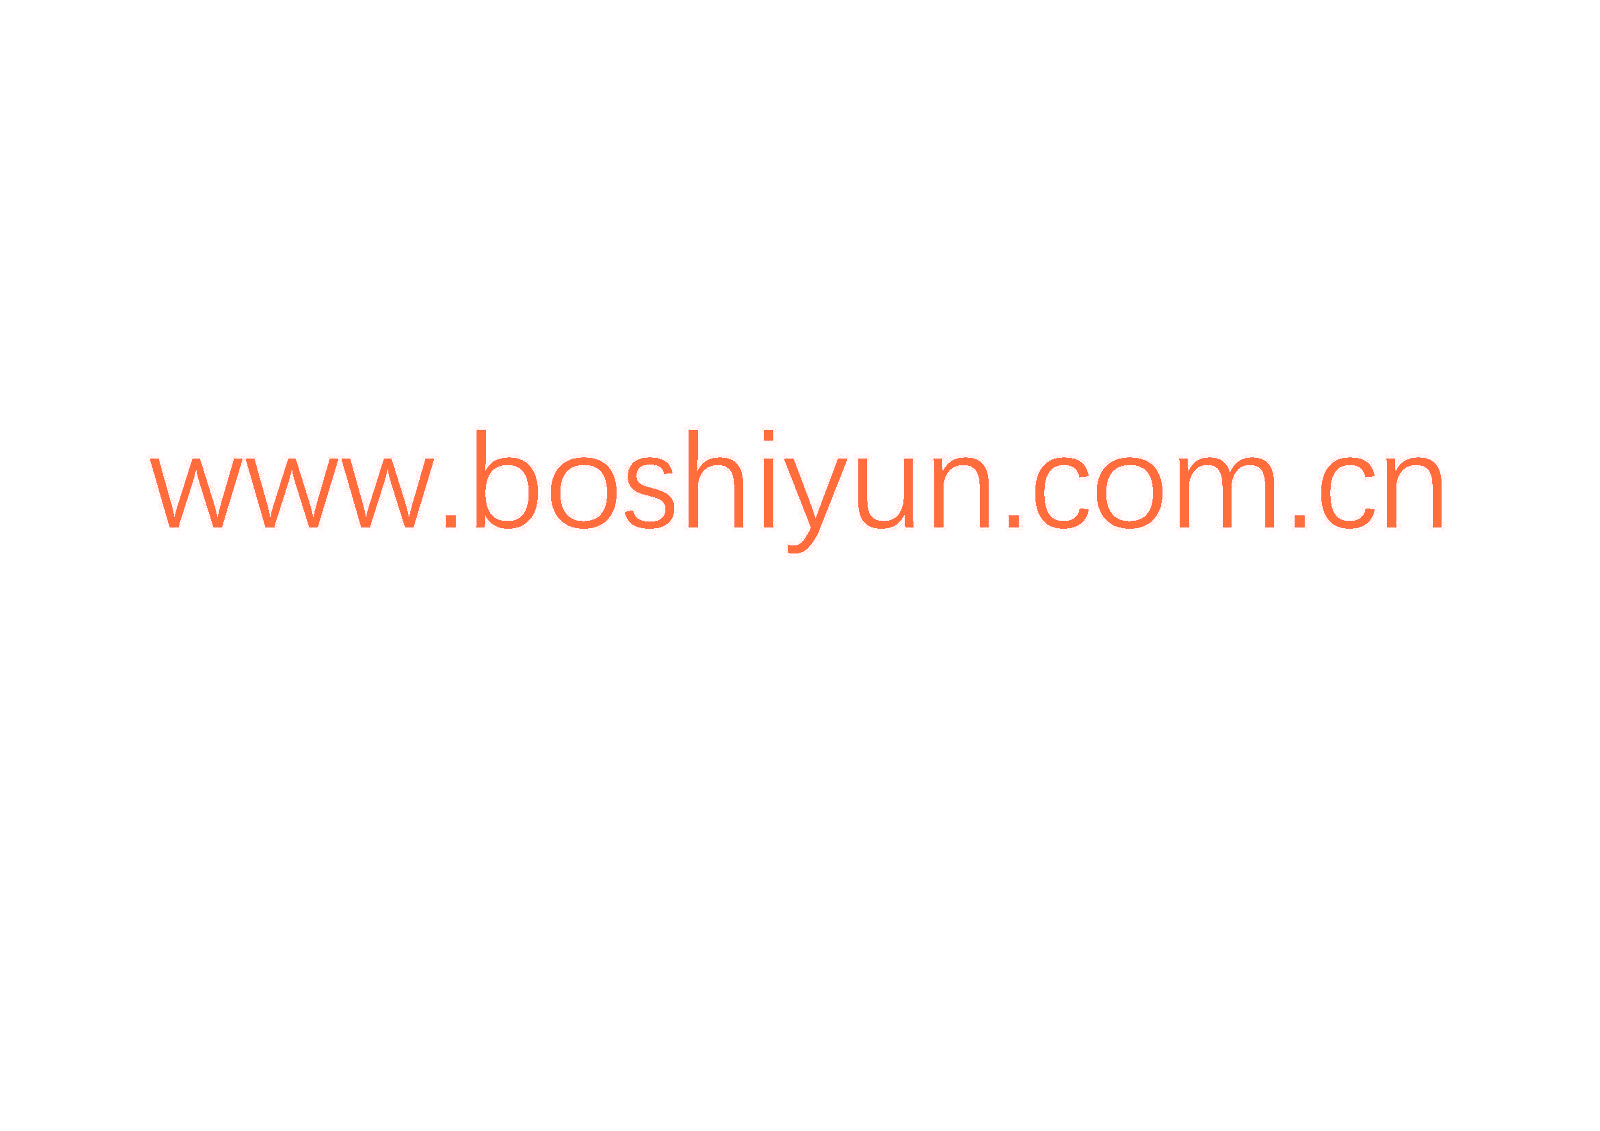 WWW.BOSHIYUN.COM.CN